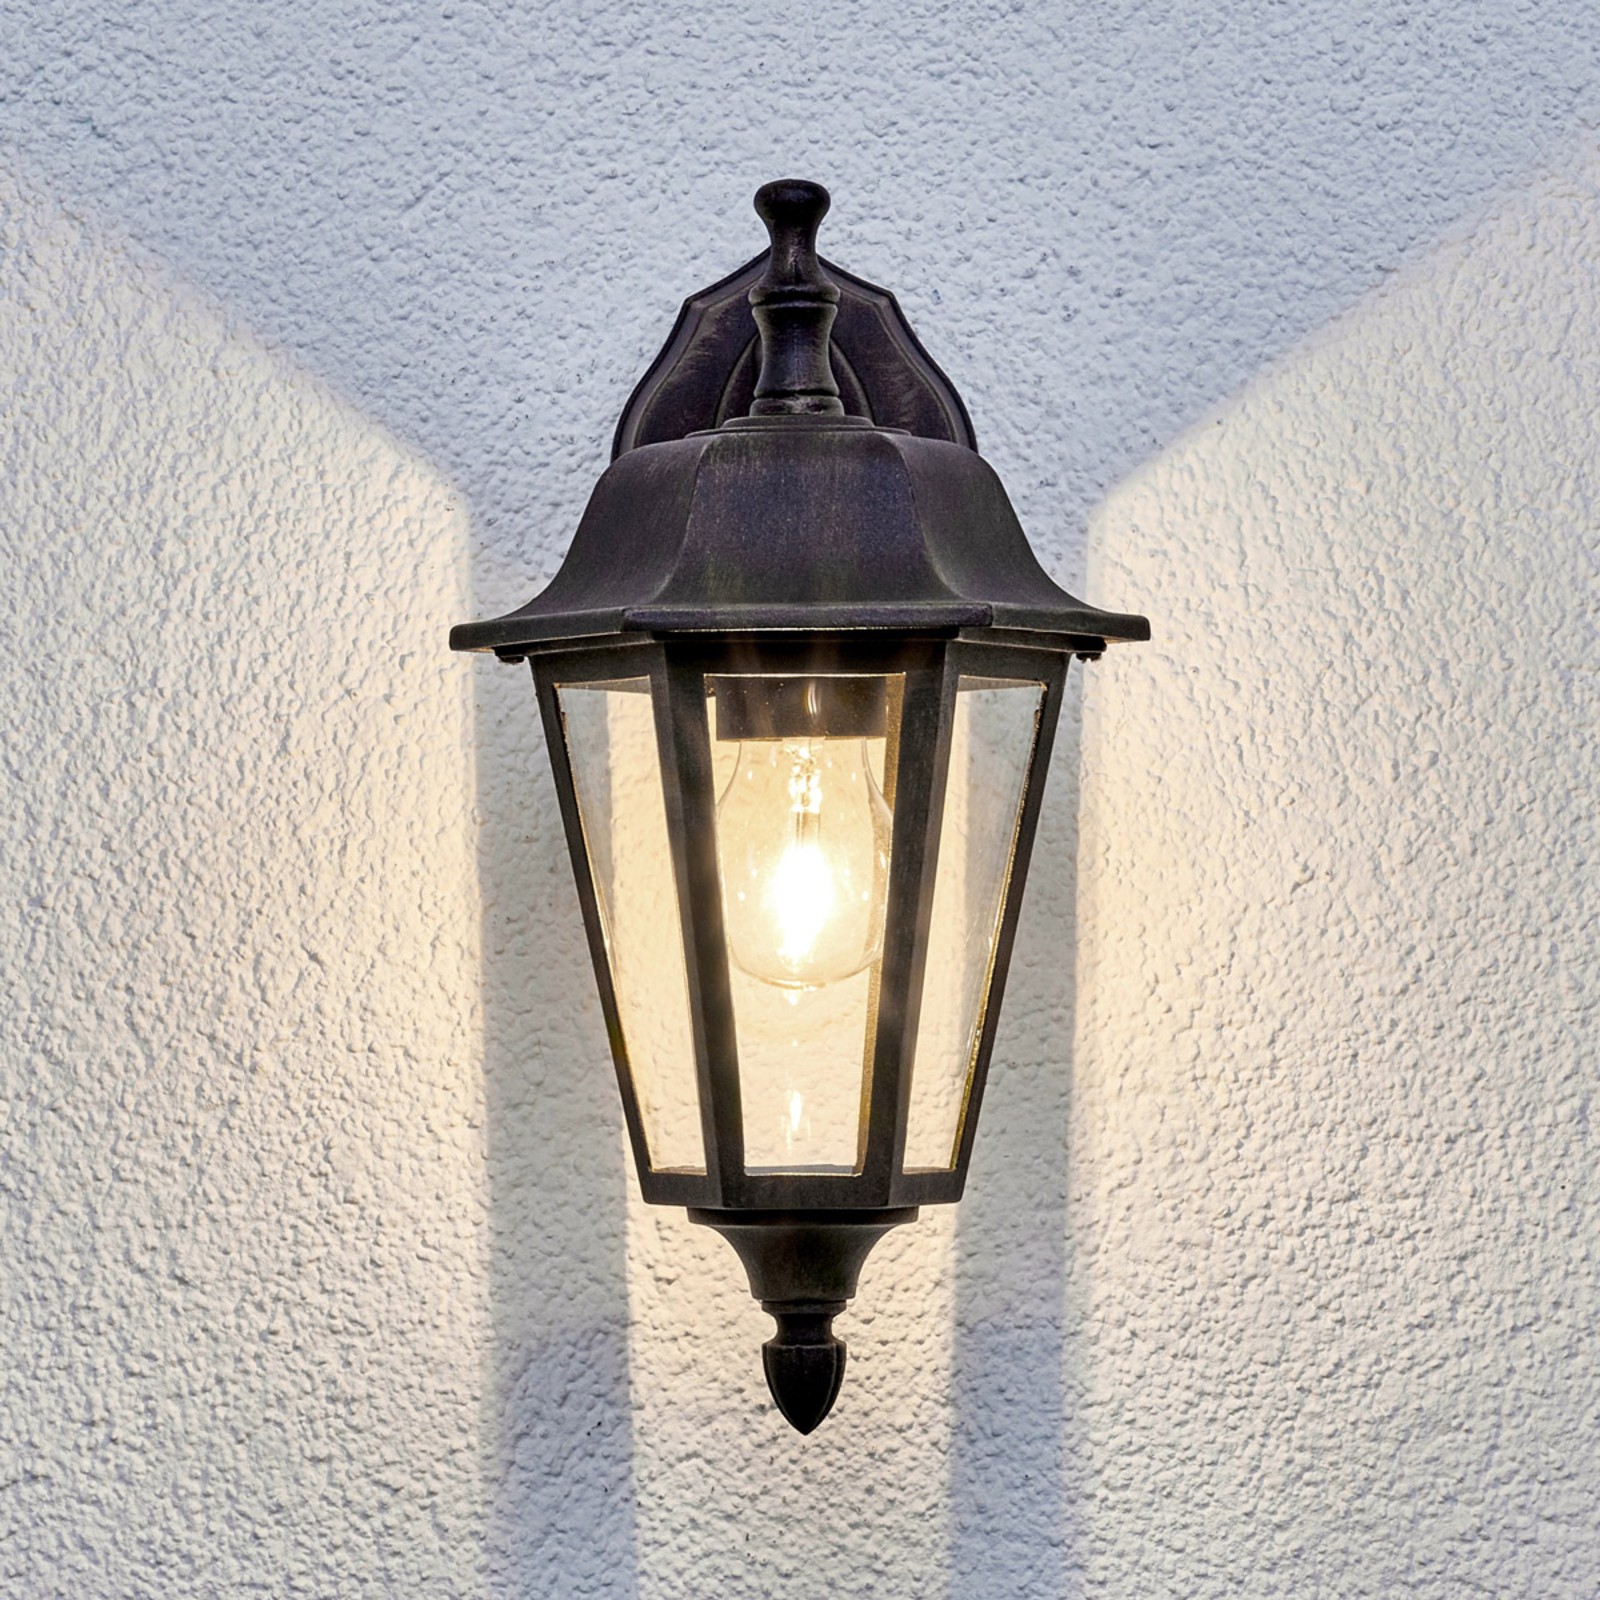 Lamina kültéri fali lámpa, laterna alakú, függő